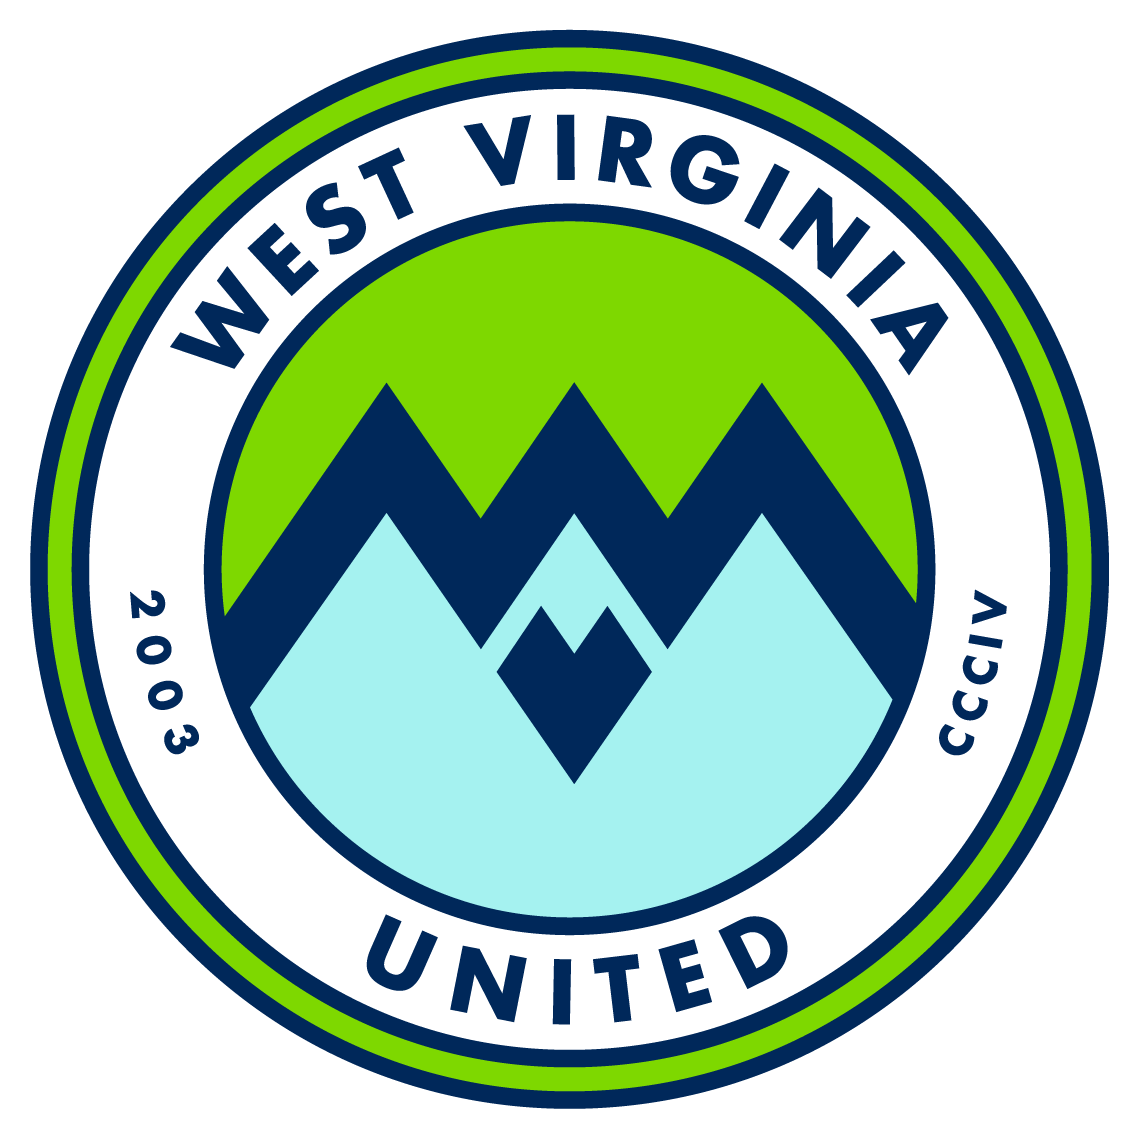 West Virginia United 